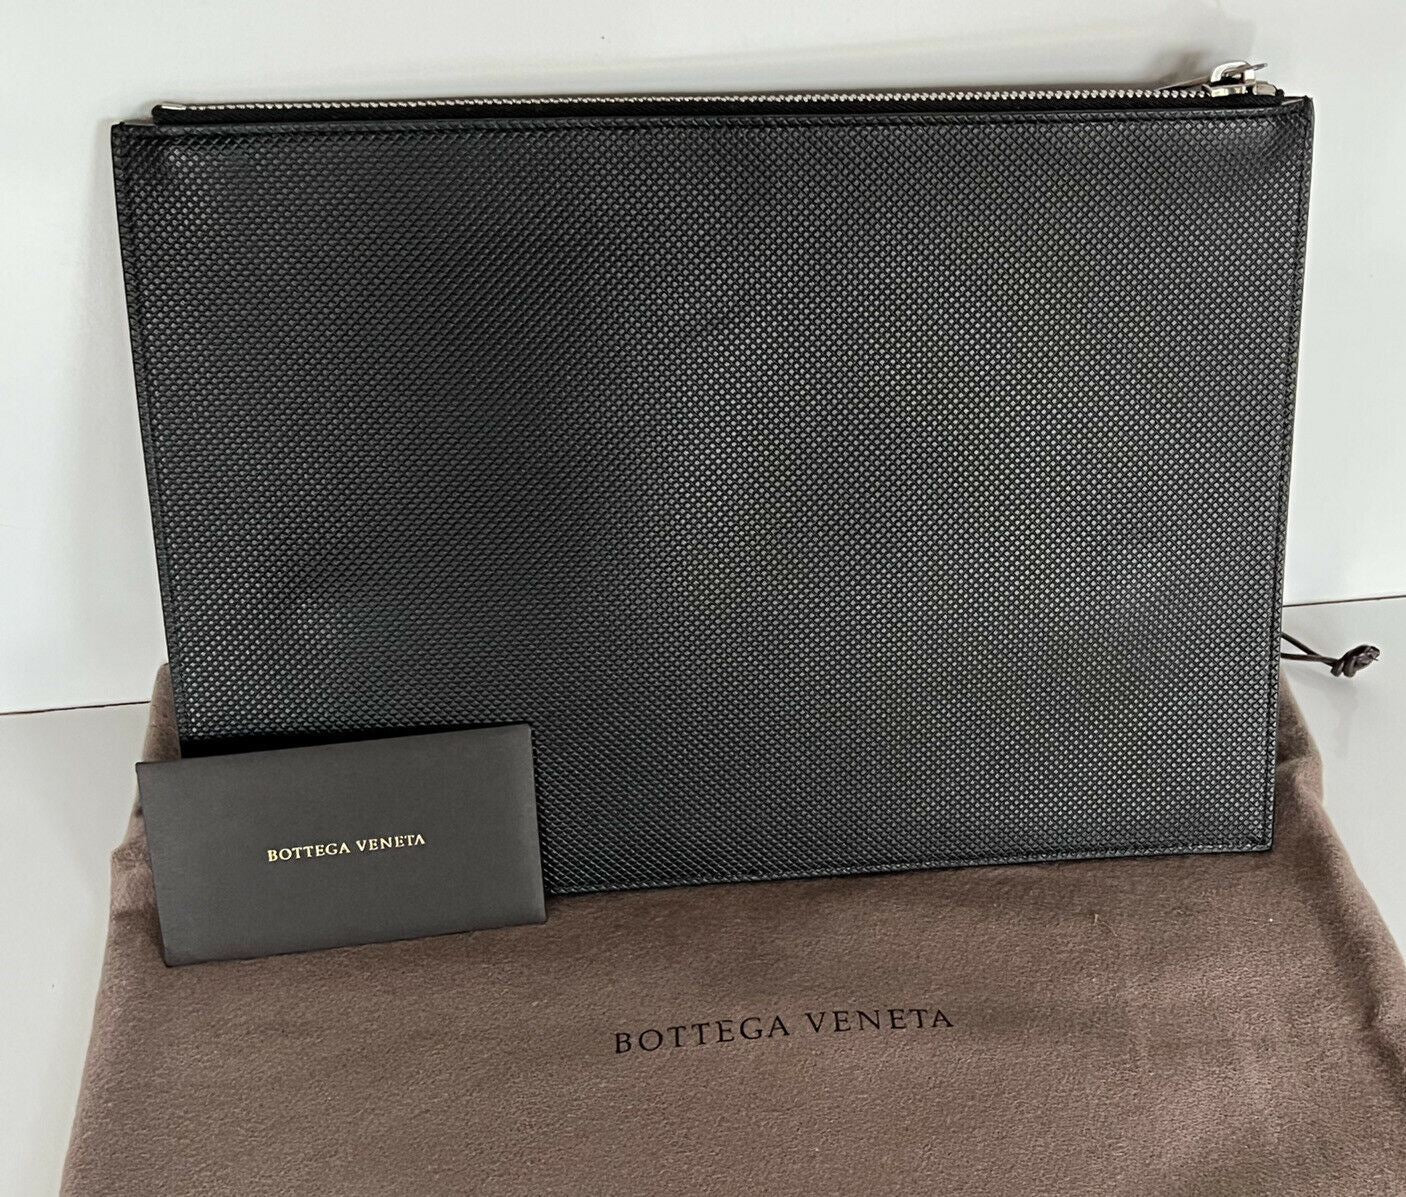 NWT $720 Bottega Veneta Marco Polo Black Leather Large Pouch 578213